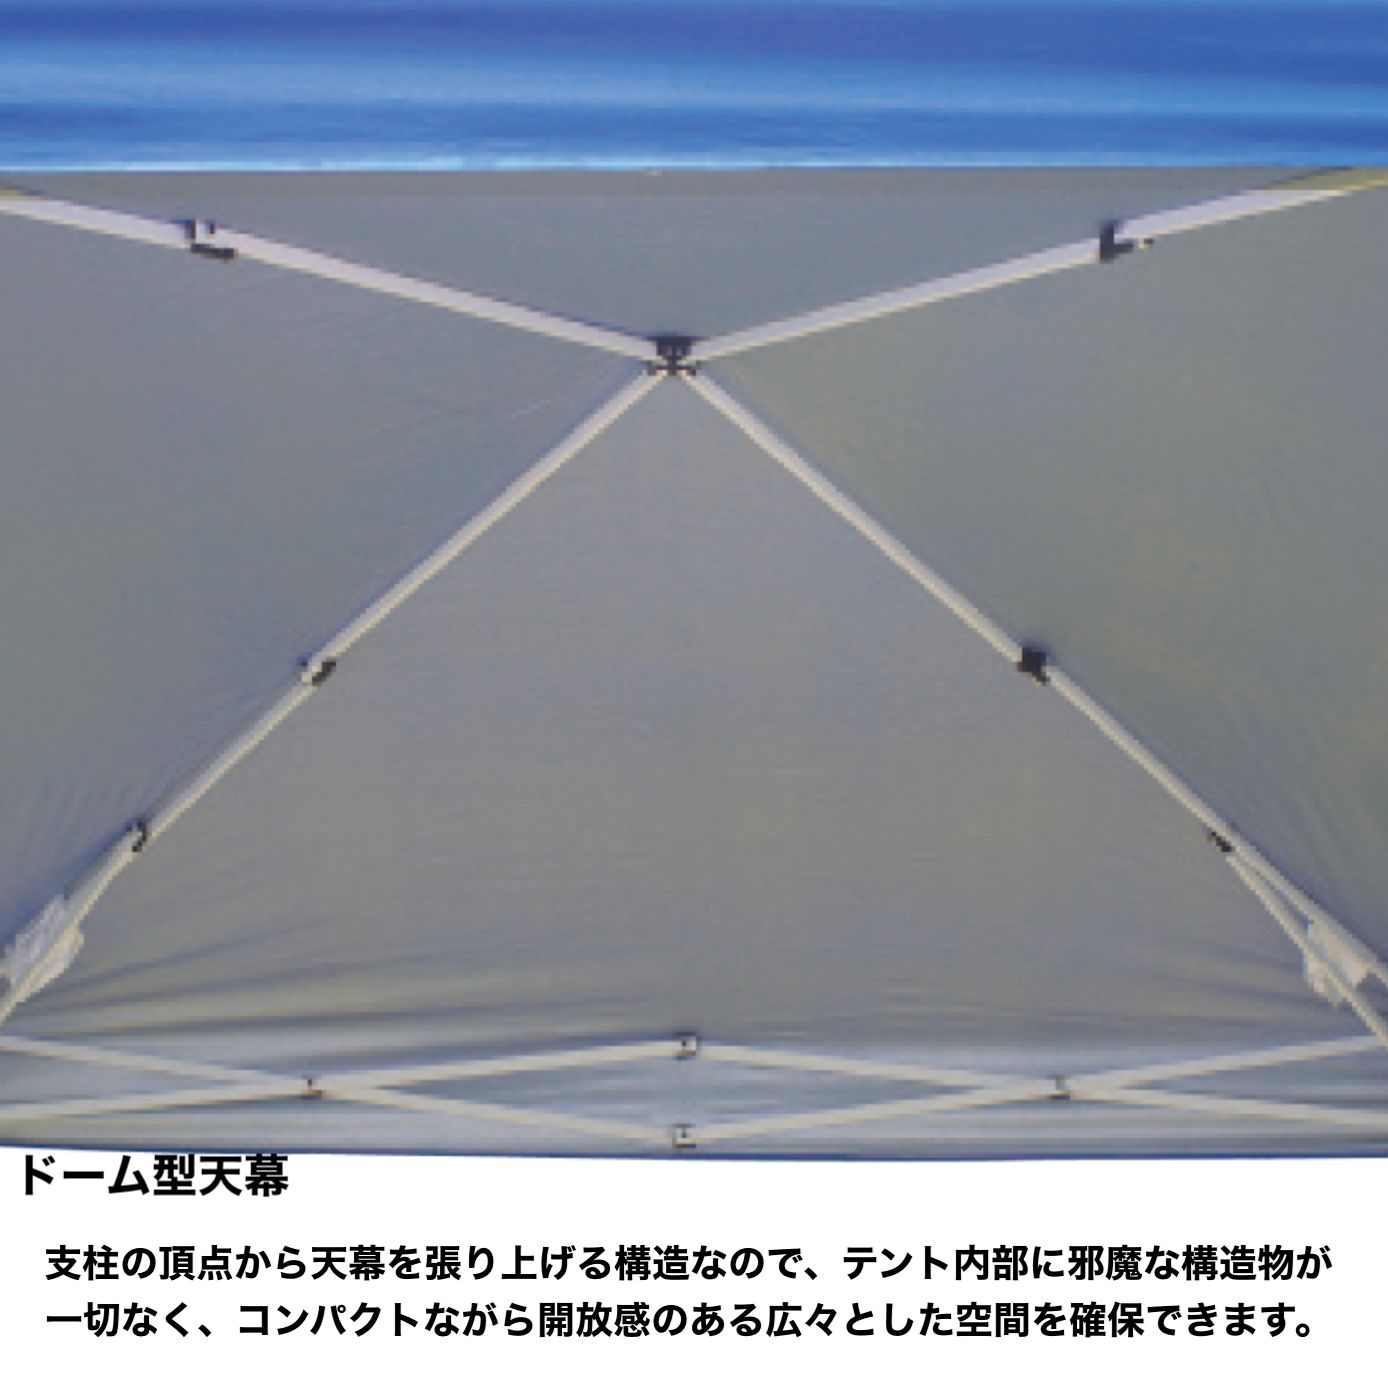 イベントテント E-Z UP（イージーアップ）ビスタ (3.5×3.5m) DMJ35-18 イージーアップテント・タープテント・簡単タープ・シェード・日除け  hidas leiri メルカリ